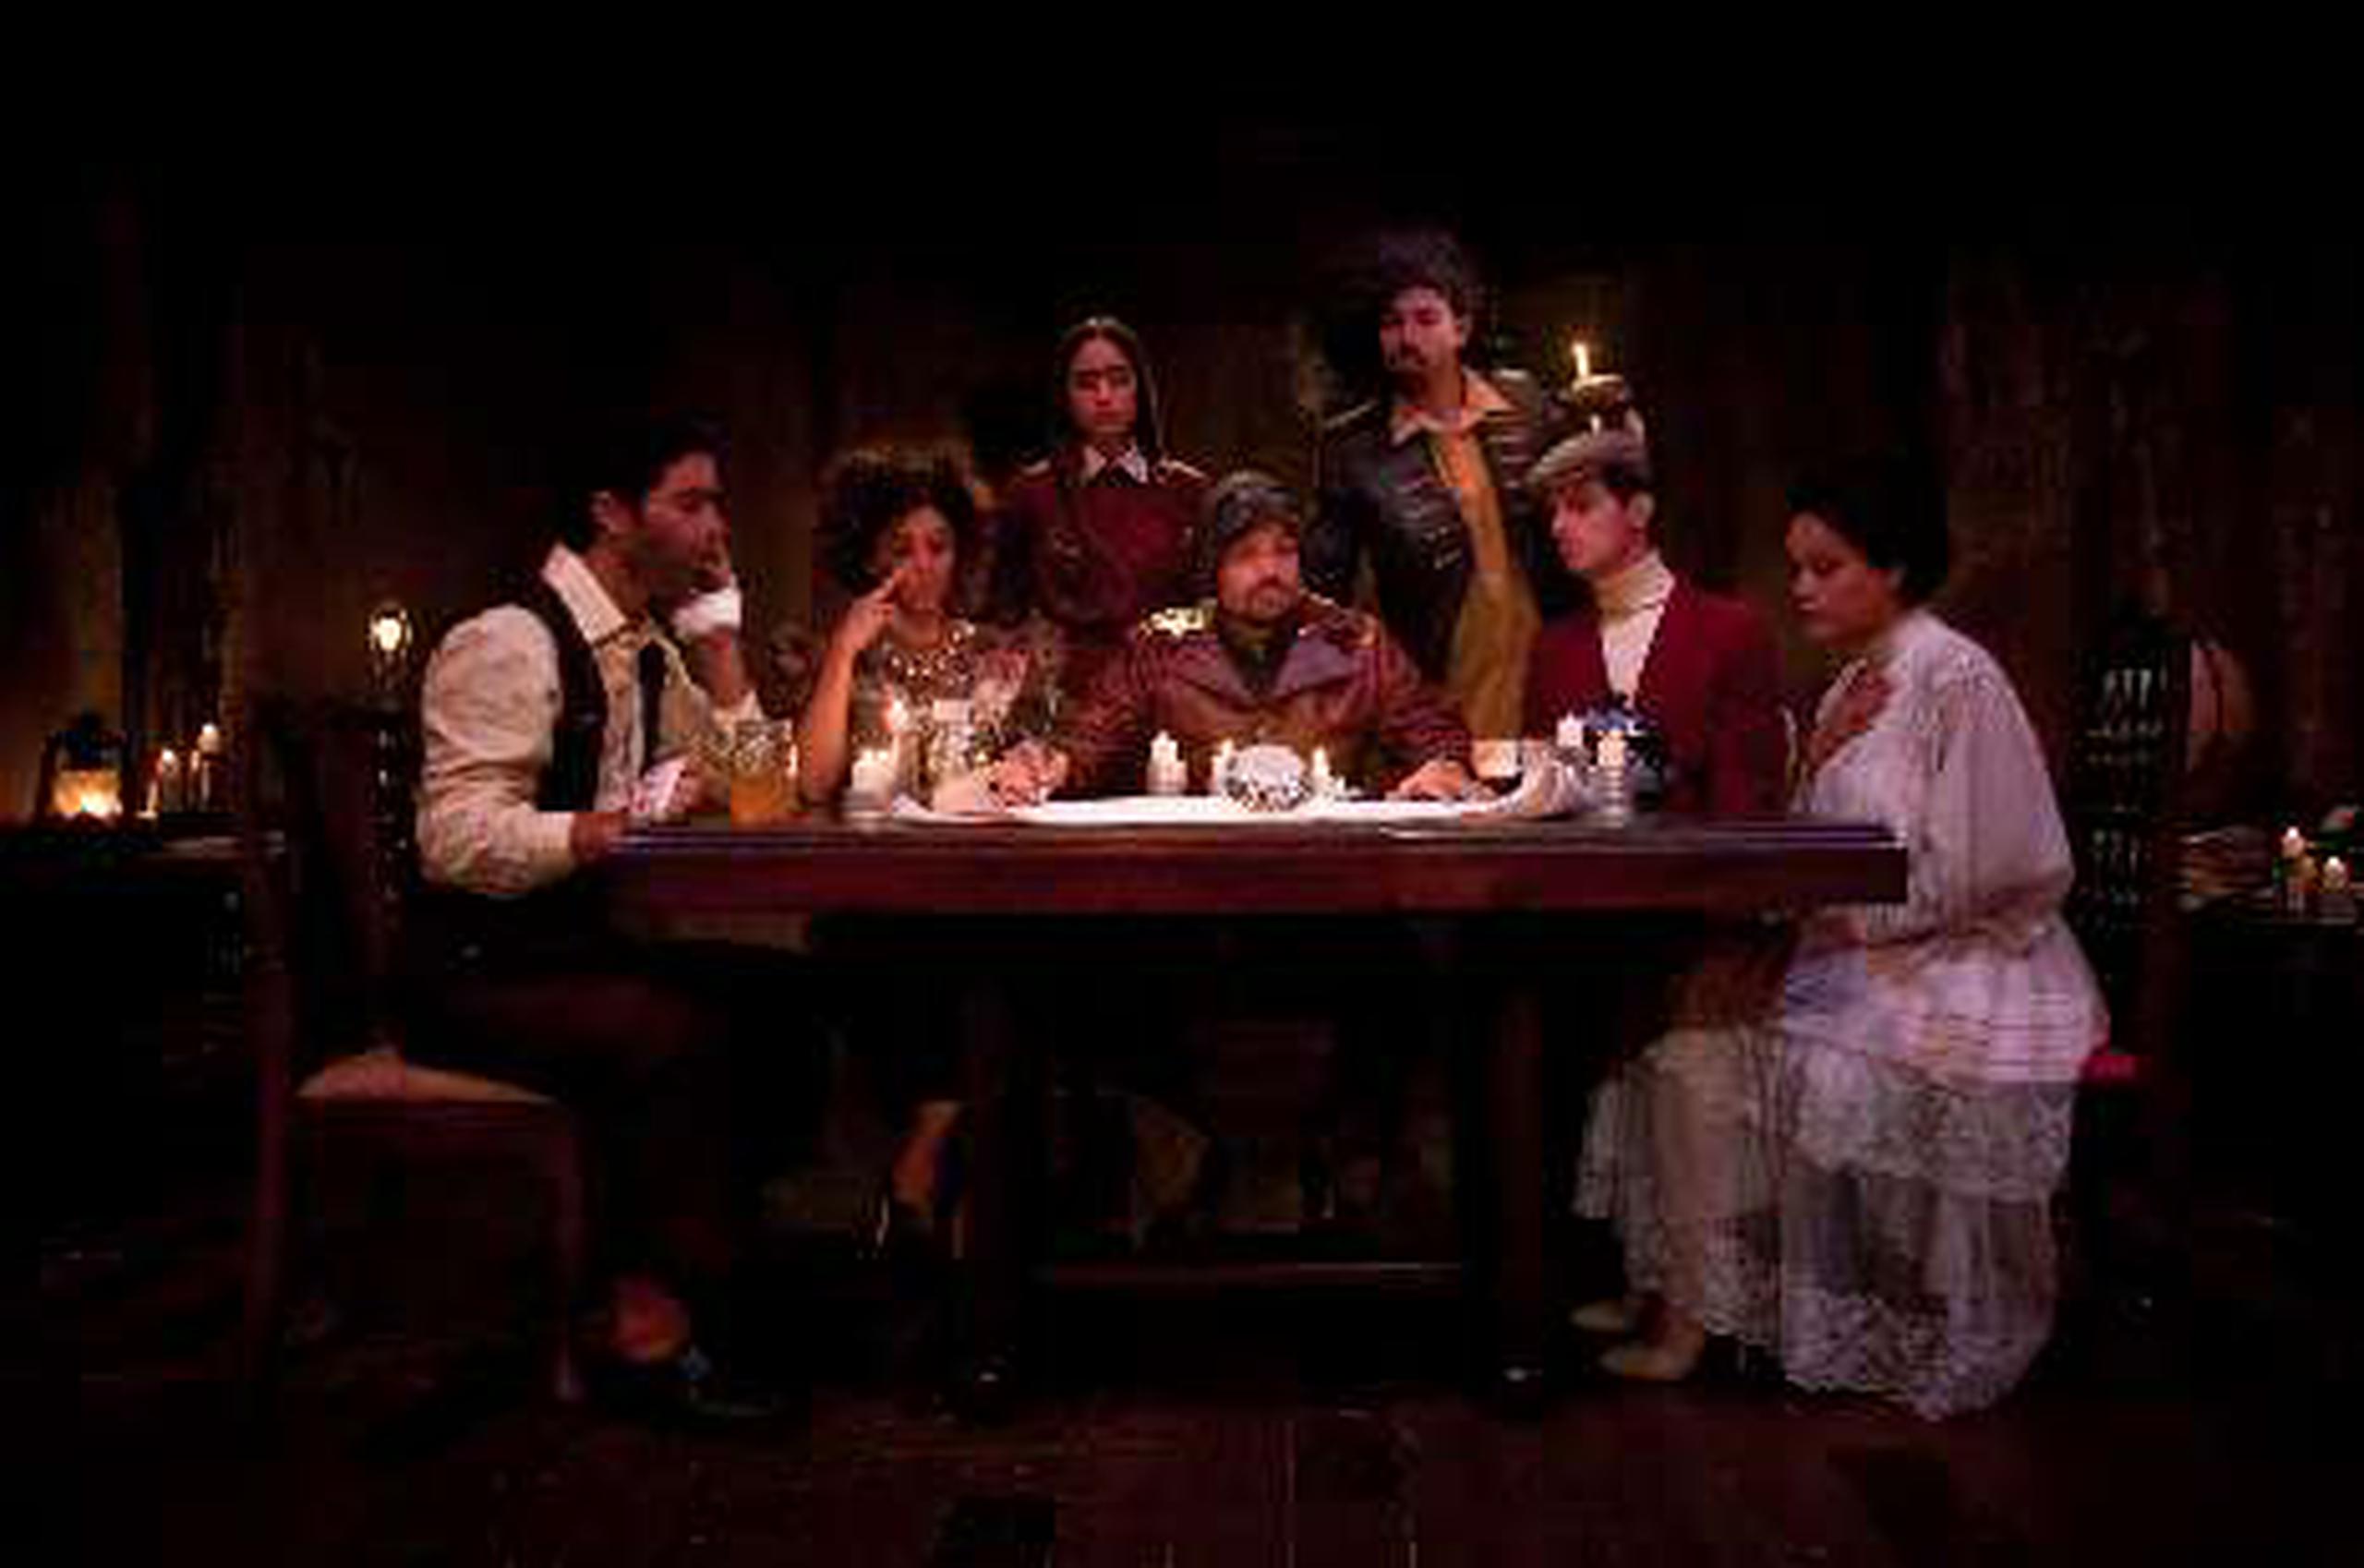  El colectivo Teatro Breve inicia su nueva temporada este domingo en el café-teatro El Josco, en Santurce. &nbsp;<font color="yellow">(Suministrada)</font>